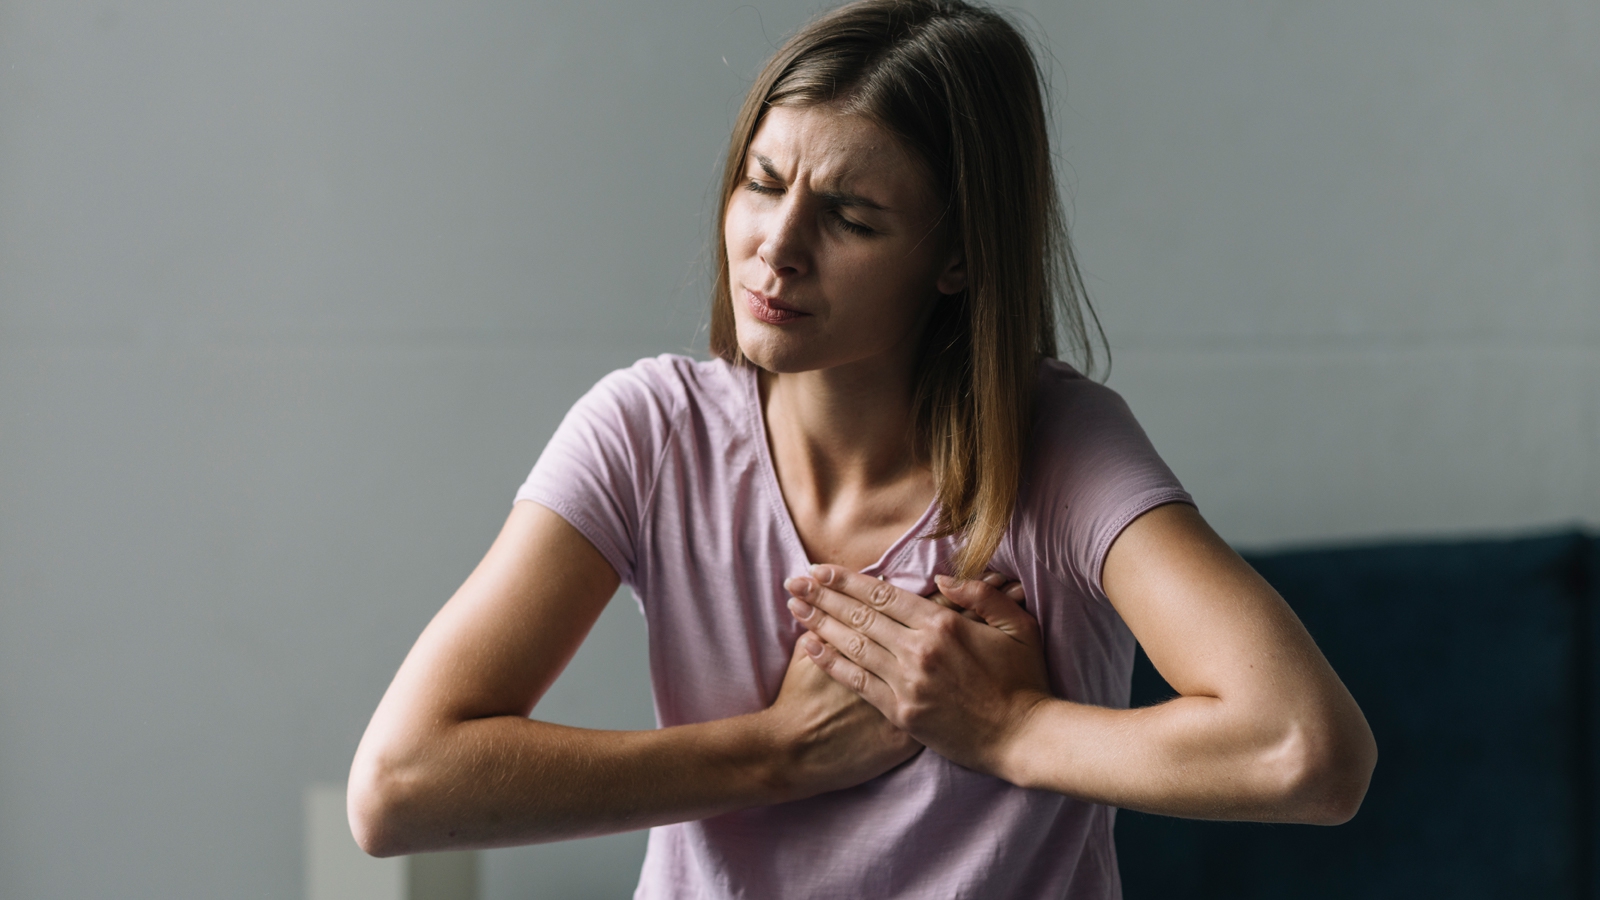 Triệu chứng đau ở giữa ức có thể liên quan đến tổn thương cơ tim không?